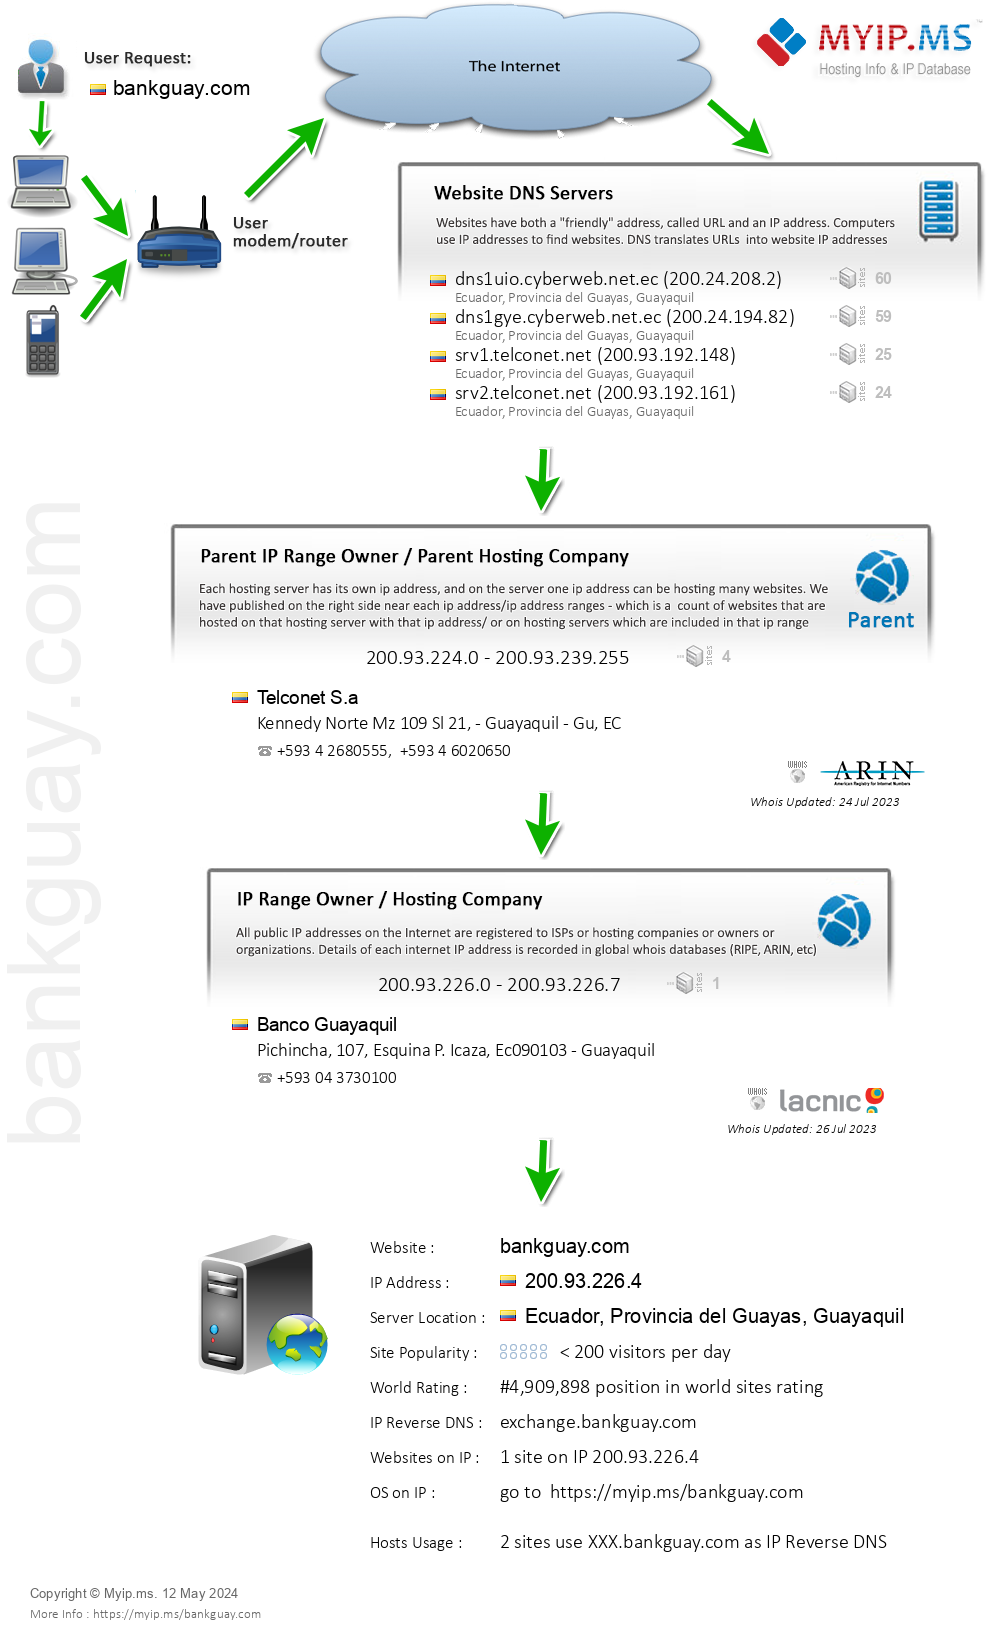 Bankguay.com - Website Hosting Visual IP Diagram